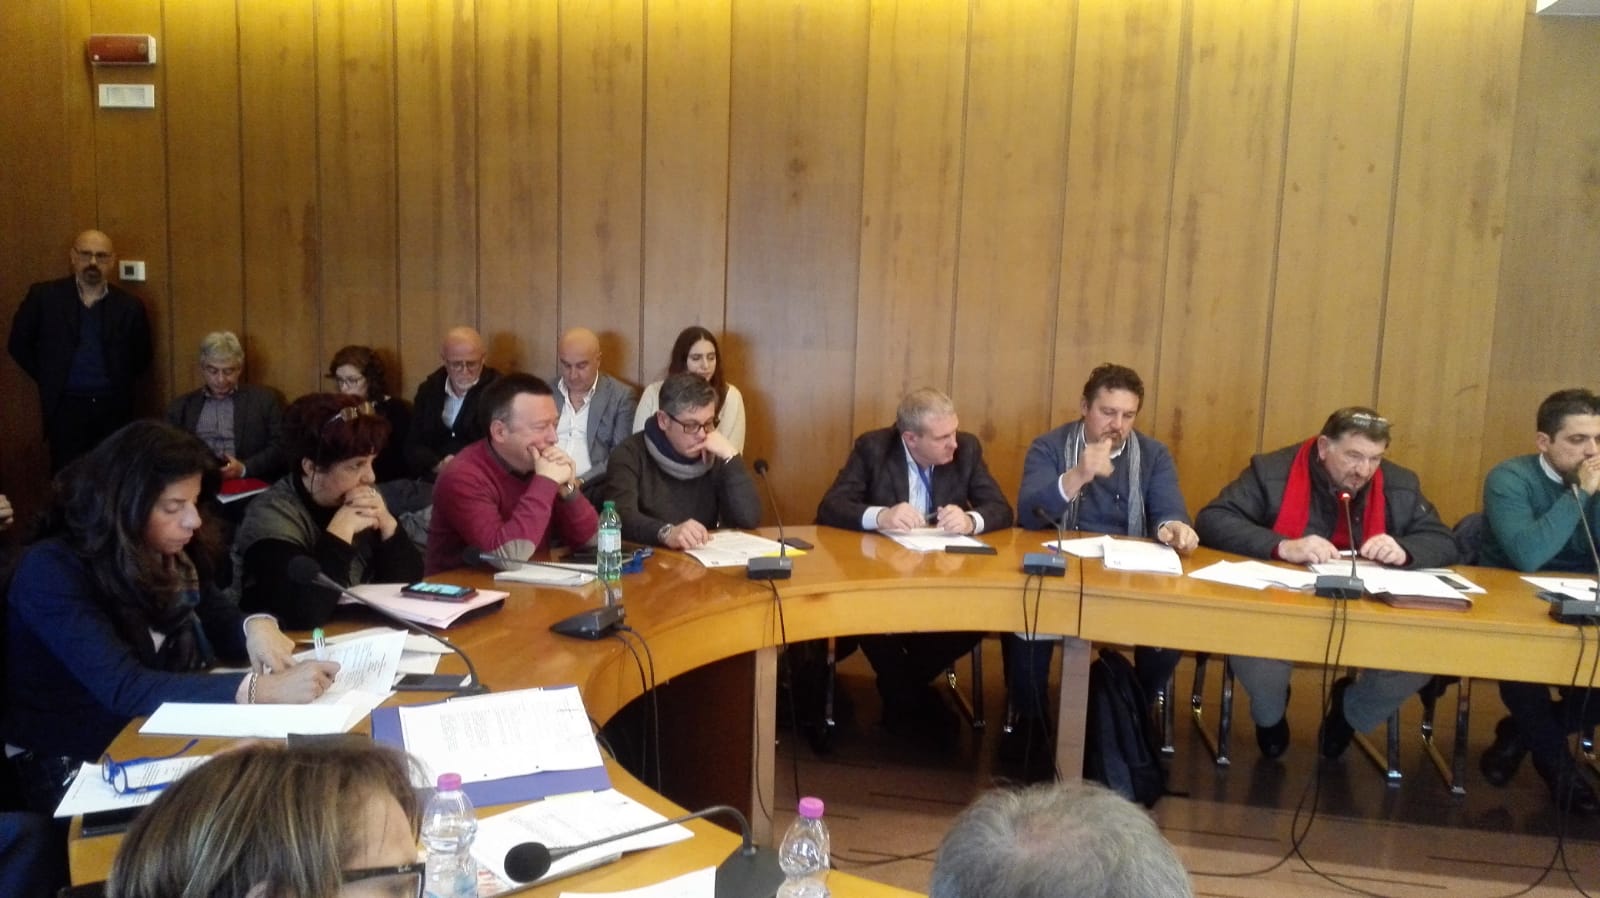 Cave Guidonia, i sindacati: “Noi unica voce fuori dal coro nella discussione in Regione Lazio”